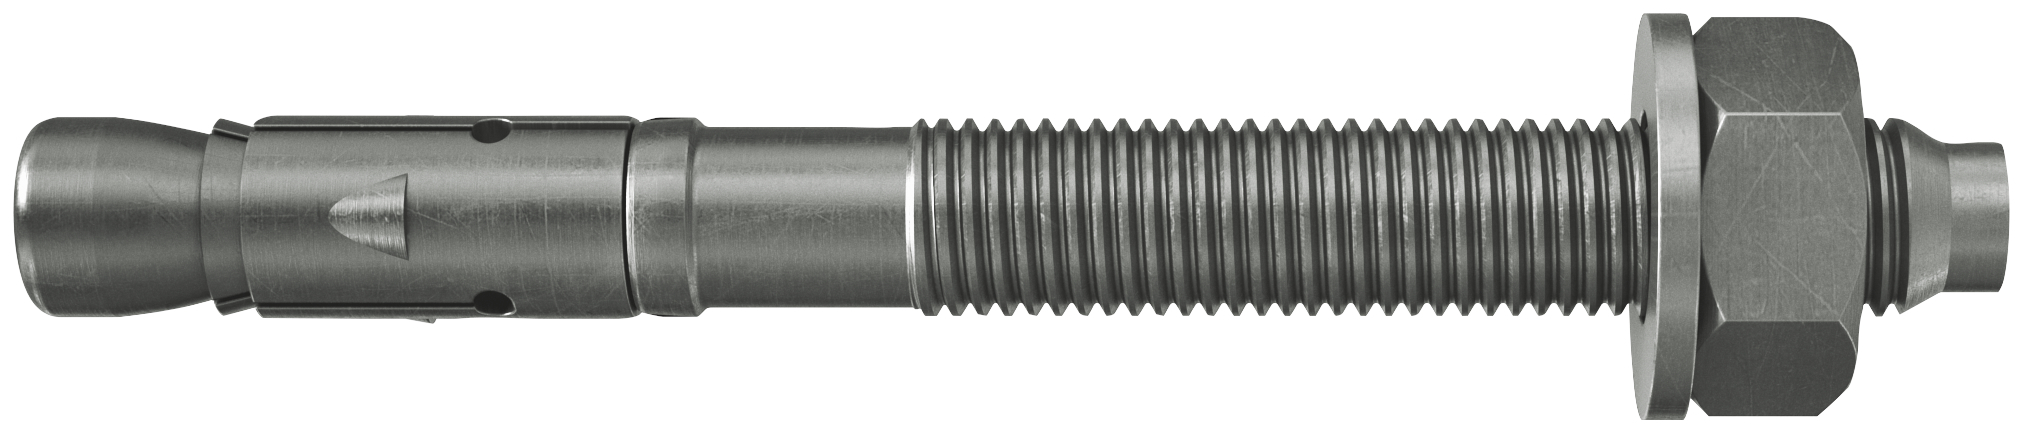 fischer Tassello acciaio FAZ II 24/30 A4 (4 Pz.) L'ancorante ad espansione ad alte prestazioni per carichi statici su calcestruzzo fessurato e per applicazioni sismiche. Versione in acciaio inossidabile con classe di resistenza alla corrosione CRC III..